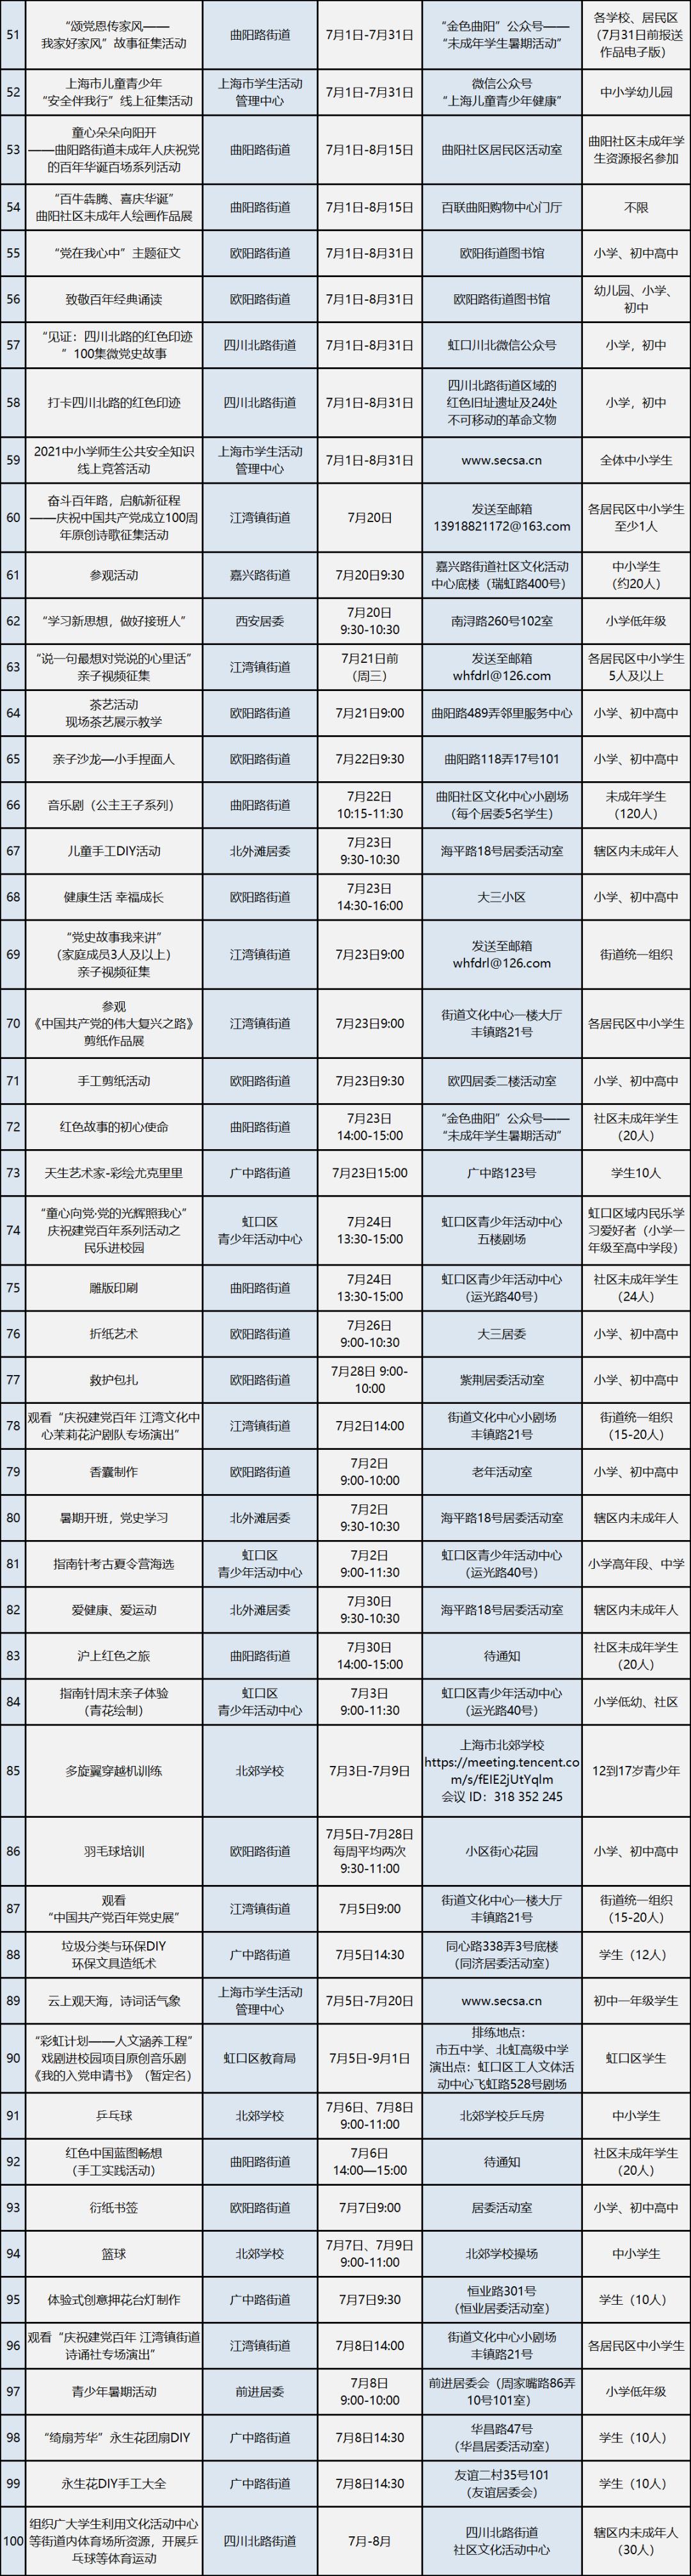 推荐给大家 2021年上海市未成年人 暑假活动项目推荐表(虹口区) (点击